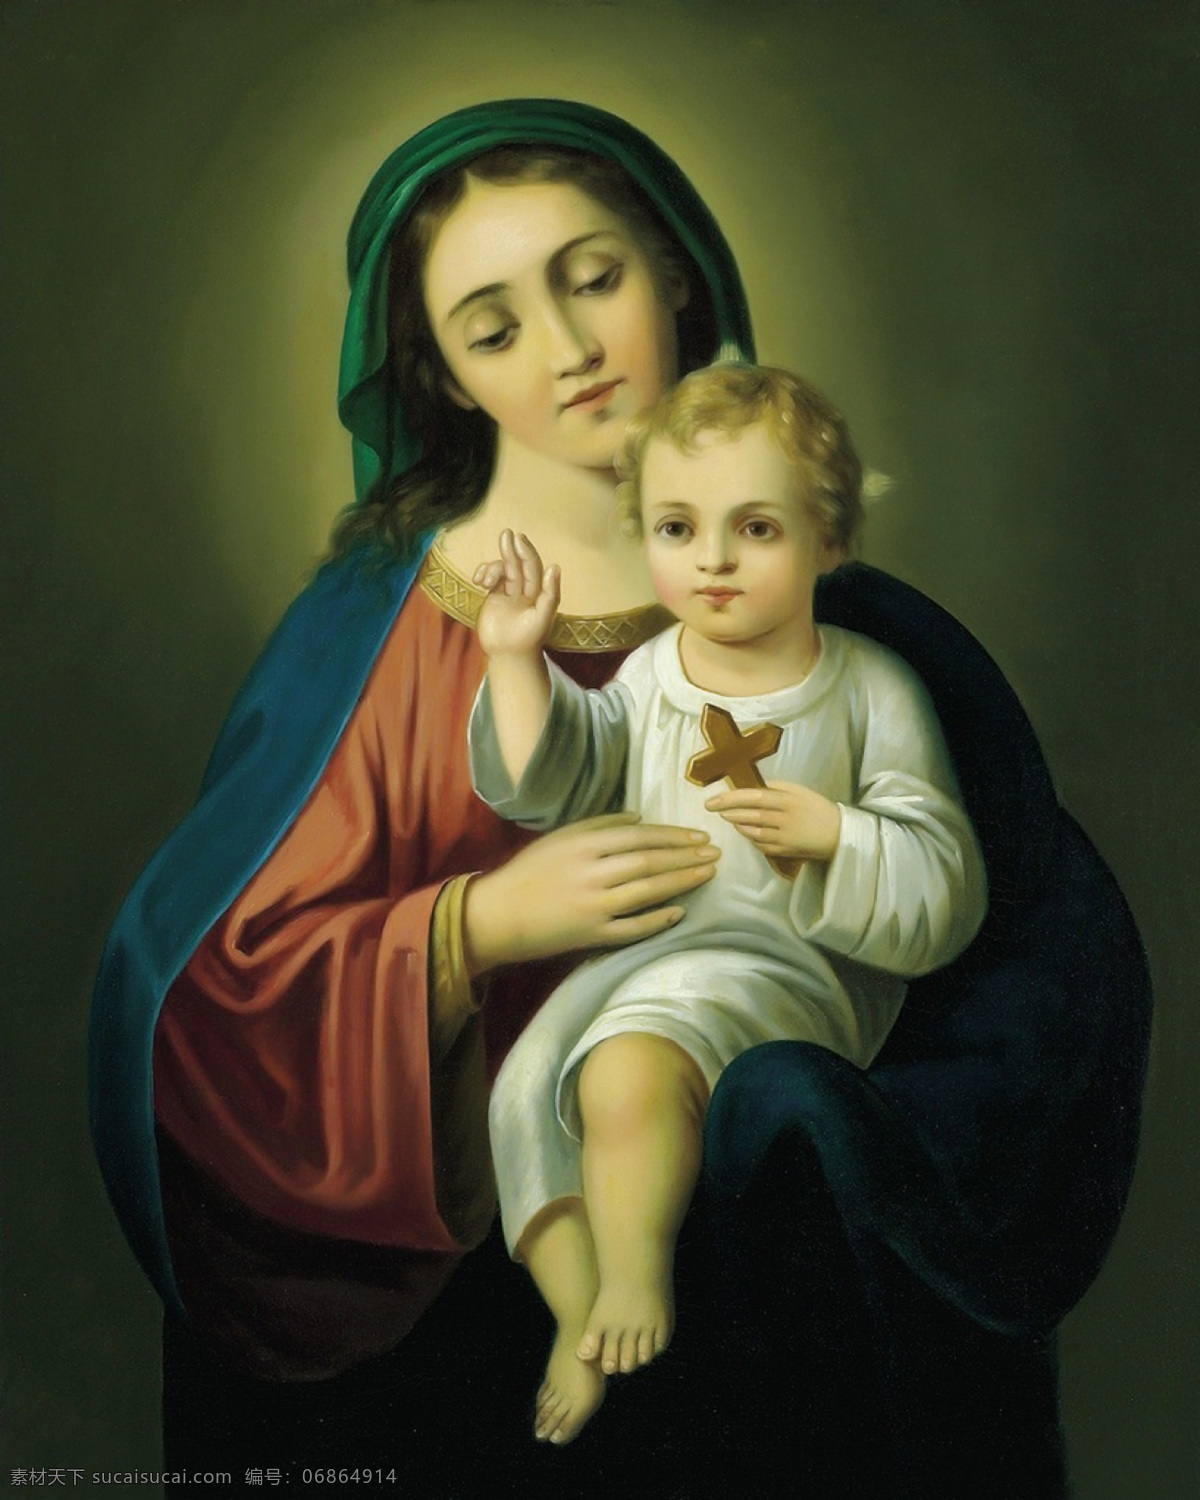 圣母 玛利亚 耶稣 圣母抱耶稣 圣母抱子 玛利亚抱耶稣 人物图库 生活人物